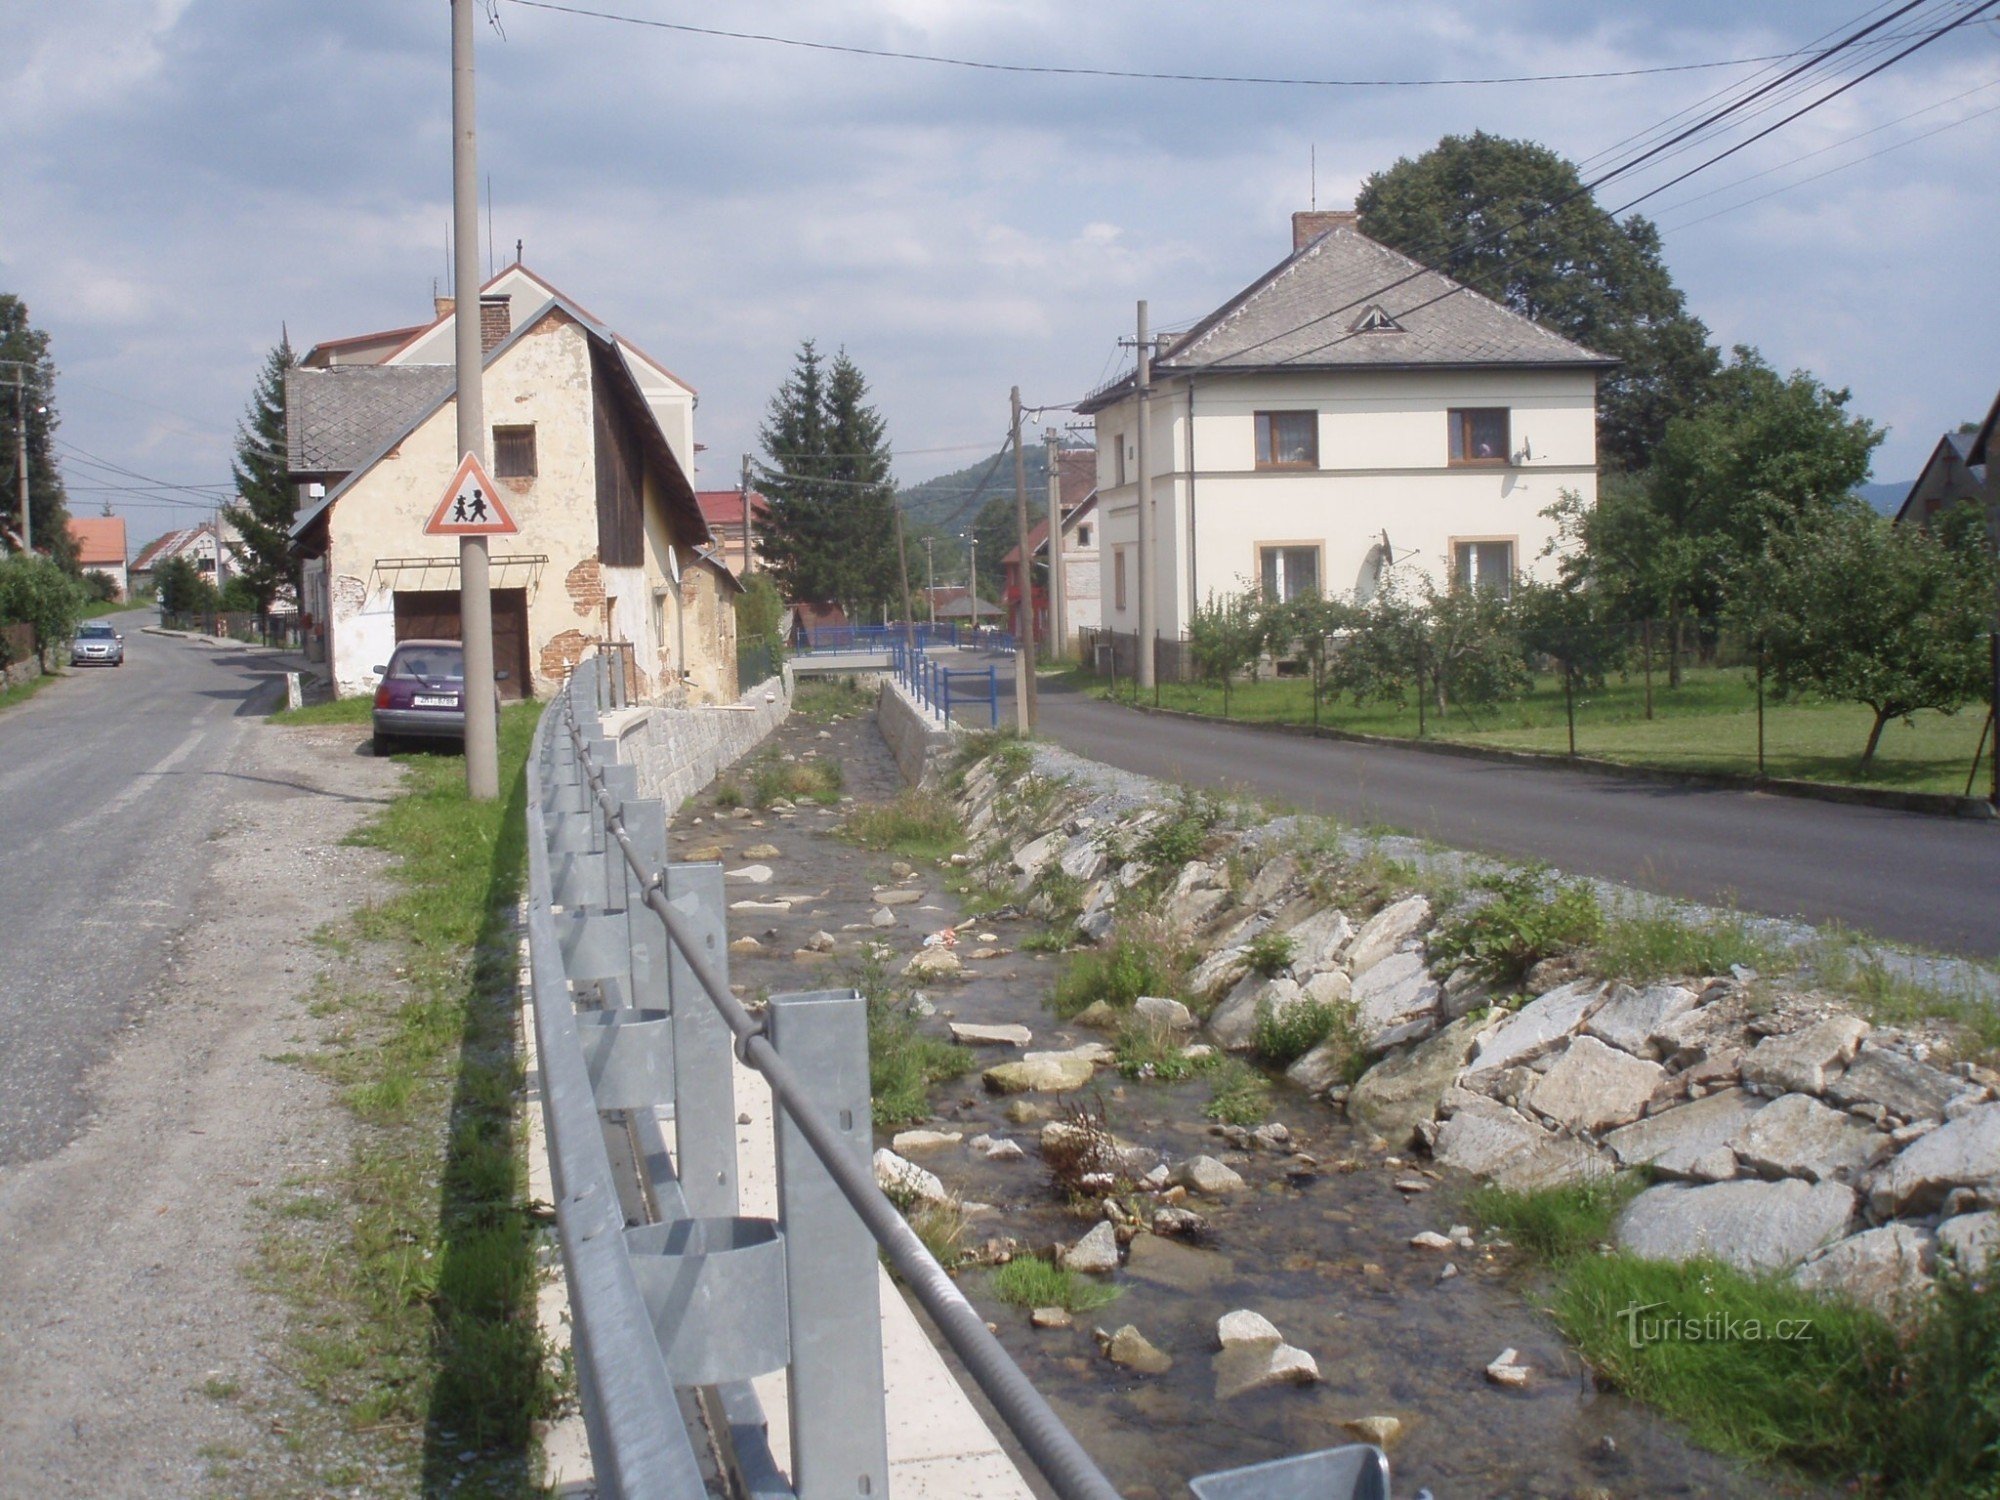 một phần khác của các biện pháp phòng chống lũ lụt từ Lesa ČR